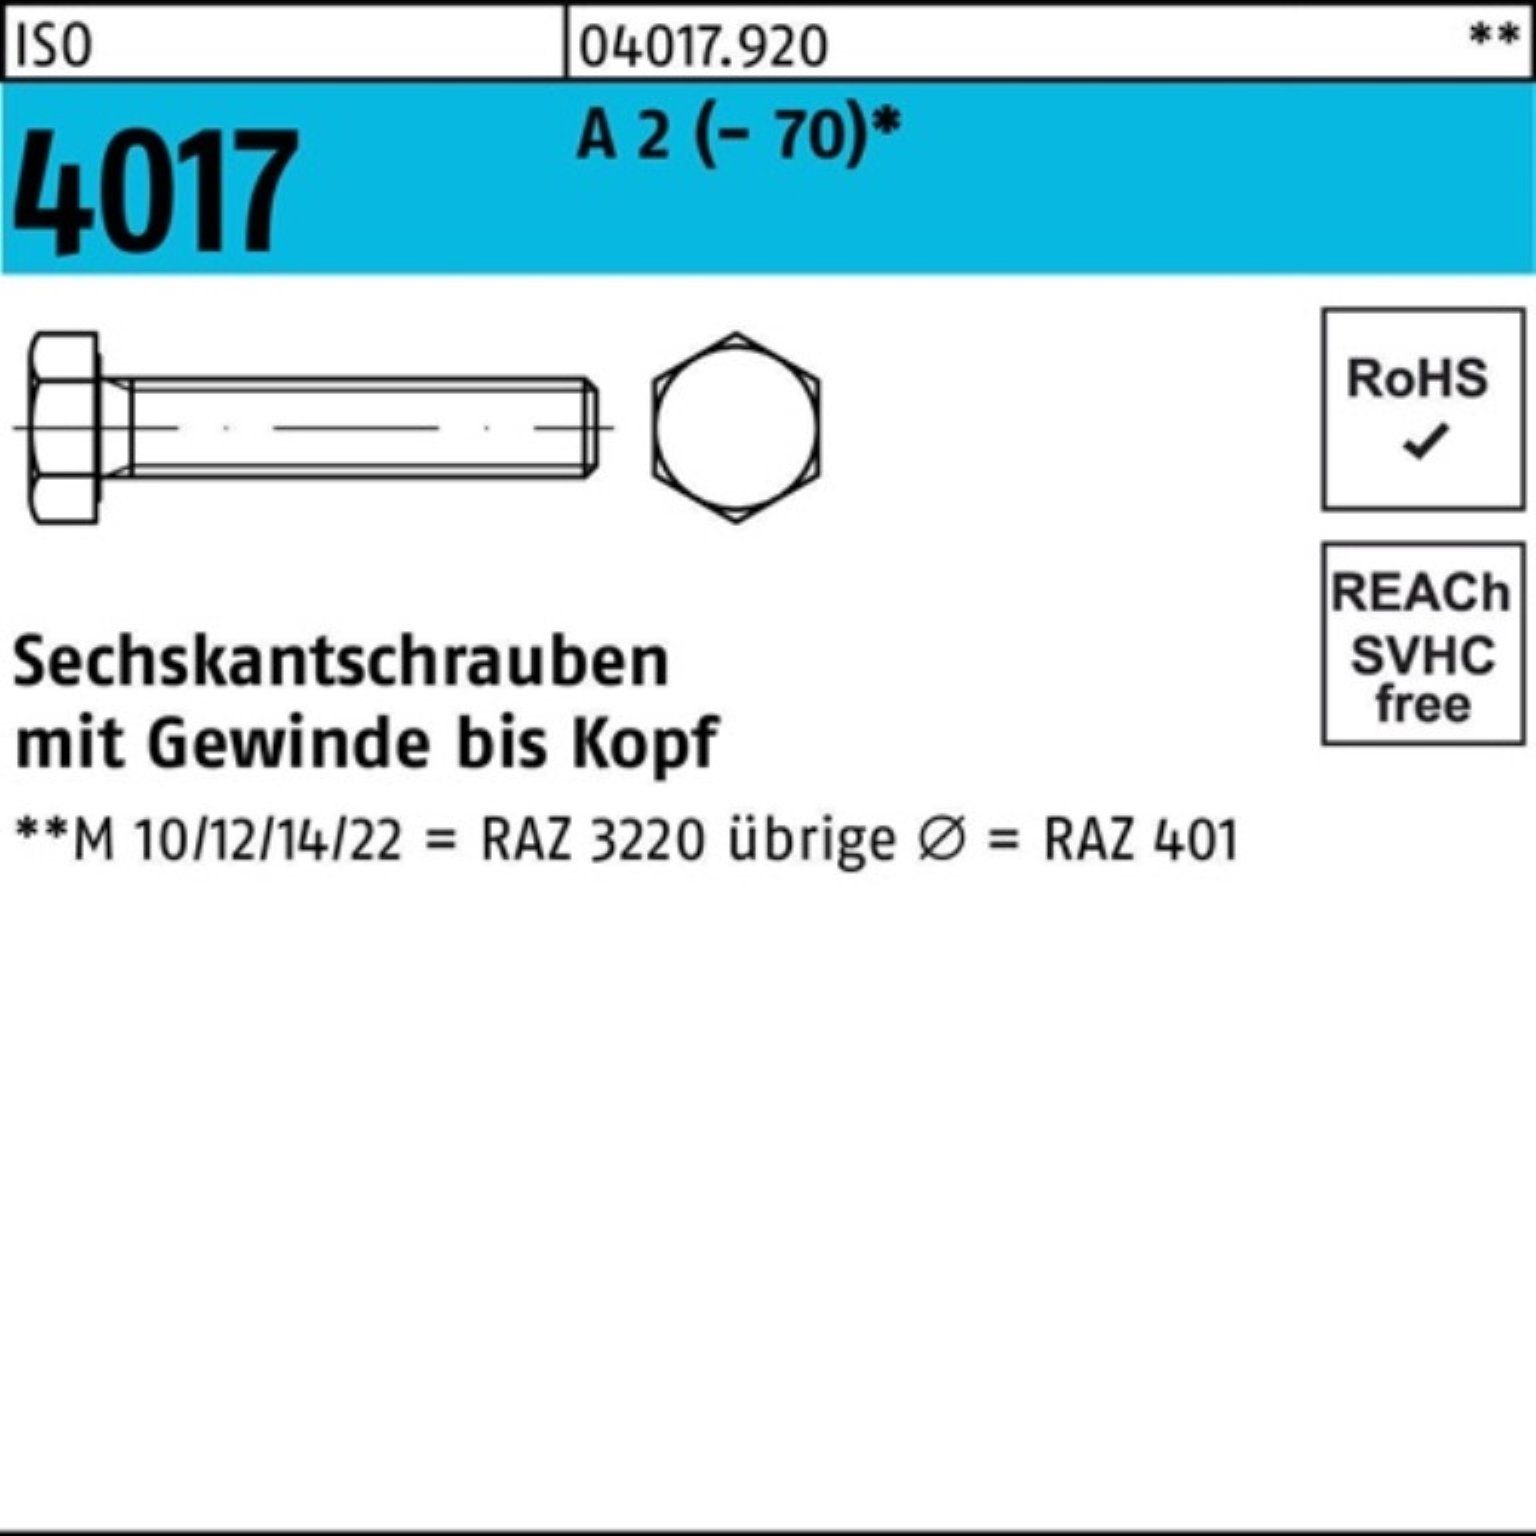 Bufab Sechskantschraube 200er Sechskantschraube ISO Stück Pack 4017 A (70) 35 200 VG M8x 2